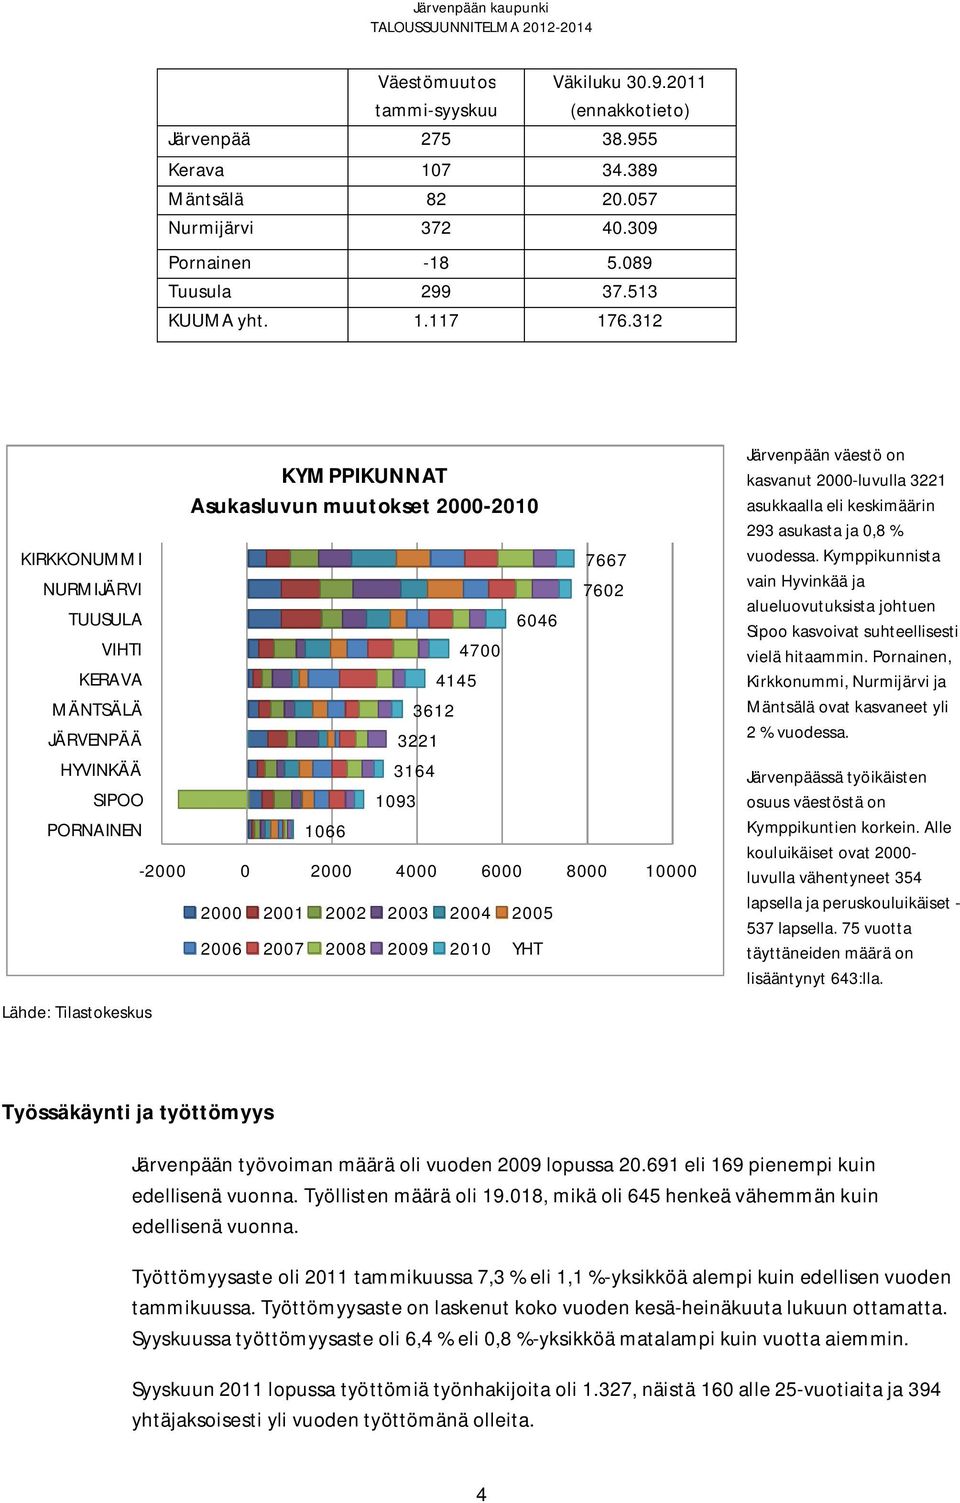 4000 6000 8000 10000 2000 2001 2002 2003 2004 2005 2006 2007 2008 2009 2010 YHT Järvenpään väestö on kasvanut 2000-luvulla 3221 asukkaalla eli keskimäärin 293 asukasta ja 0,8 % vuodessa.